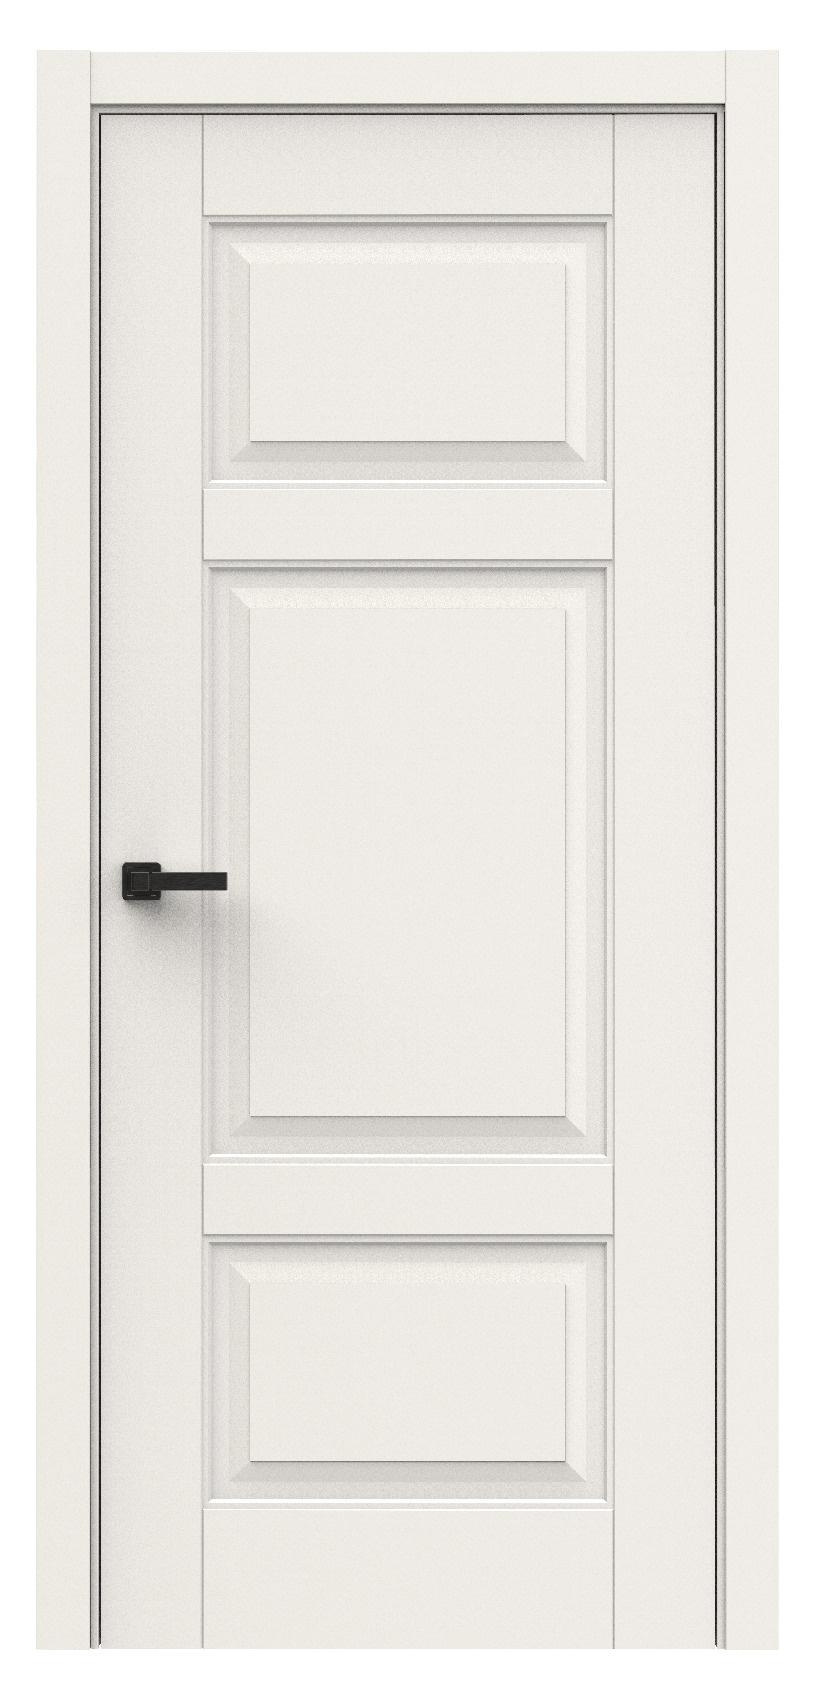 Questdoors Межкомнатная дверь QL7, арт. 18007 - фото №1